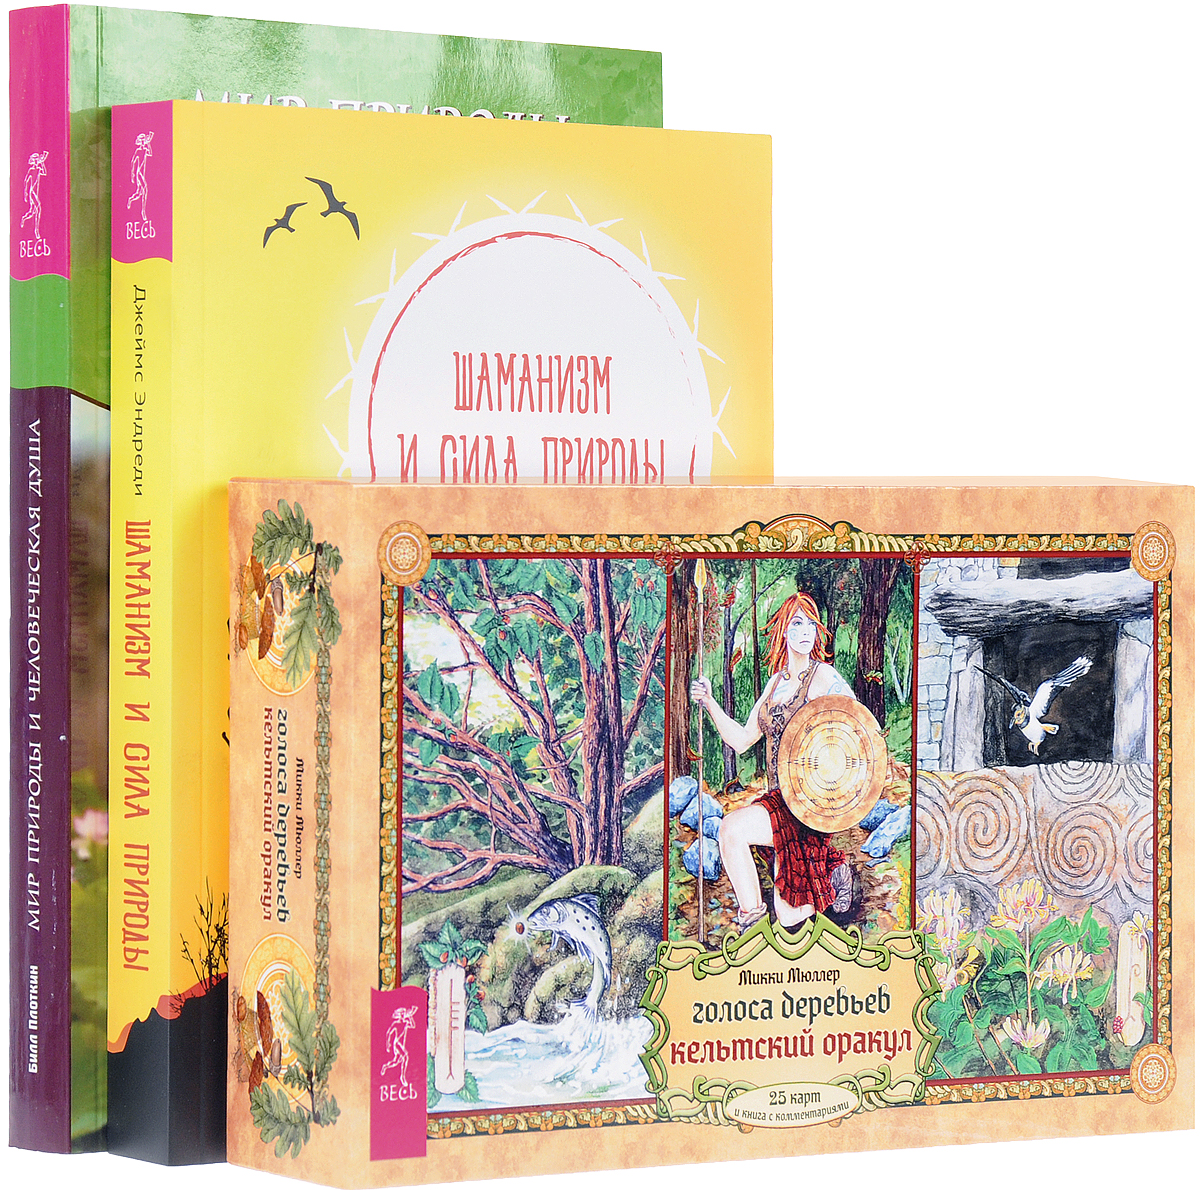 Голоса деревьев. Шаманизм. Мир природы (комплект из 3 книг + набор из 25 карт). Микки Мюллер, Джеймс Эндреди, Билл Плоткин